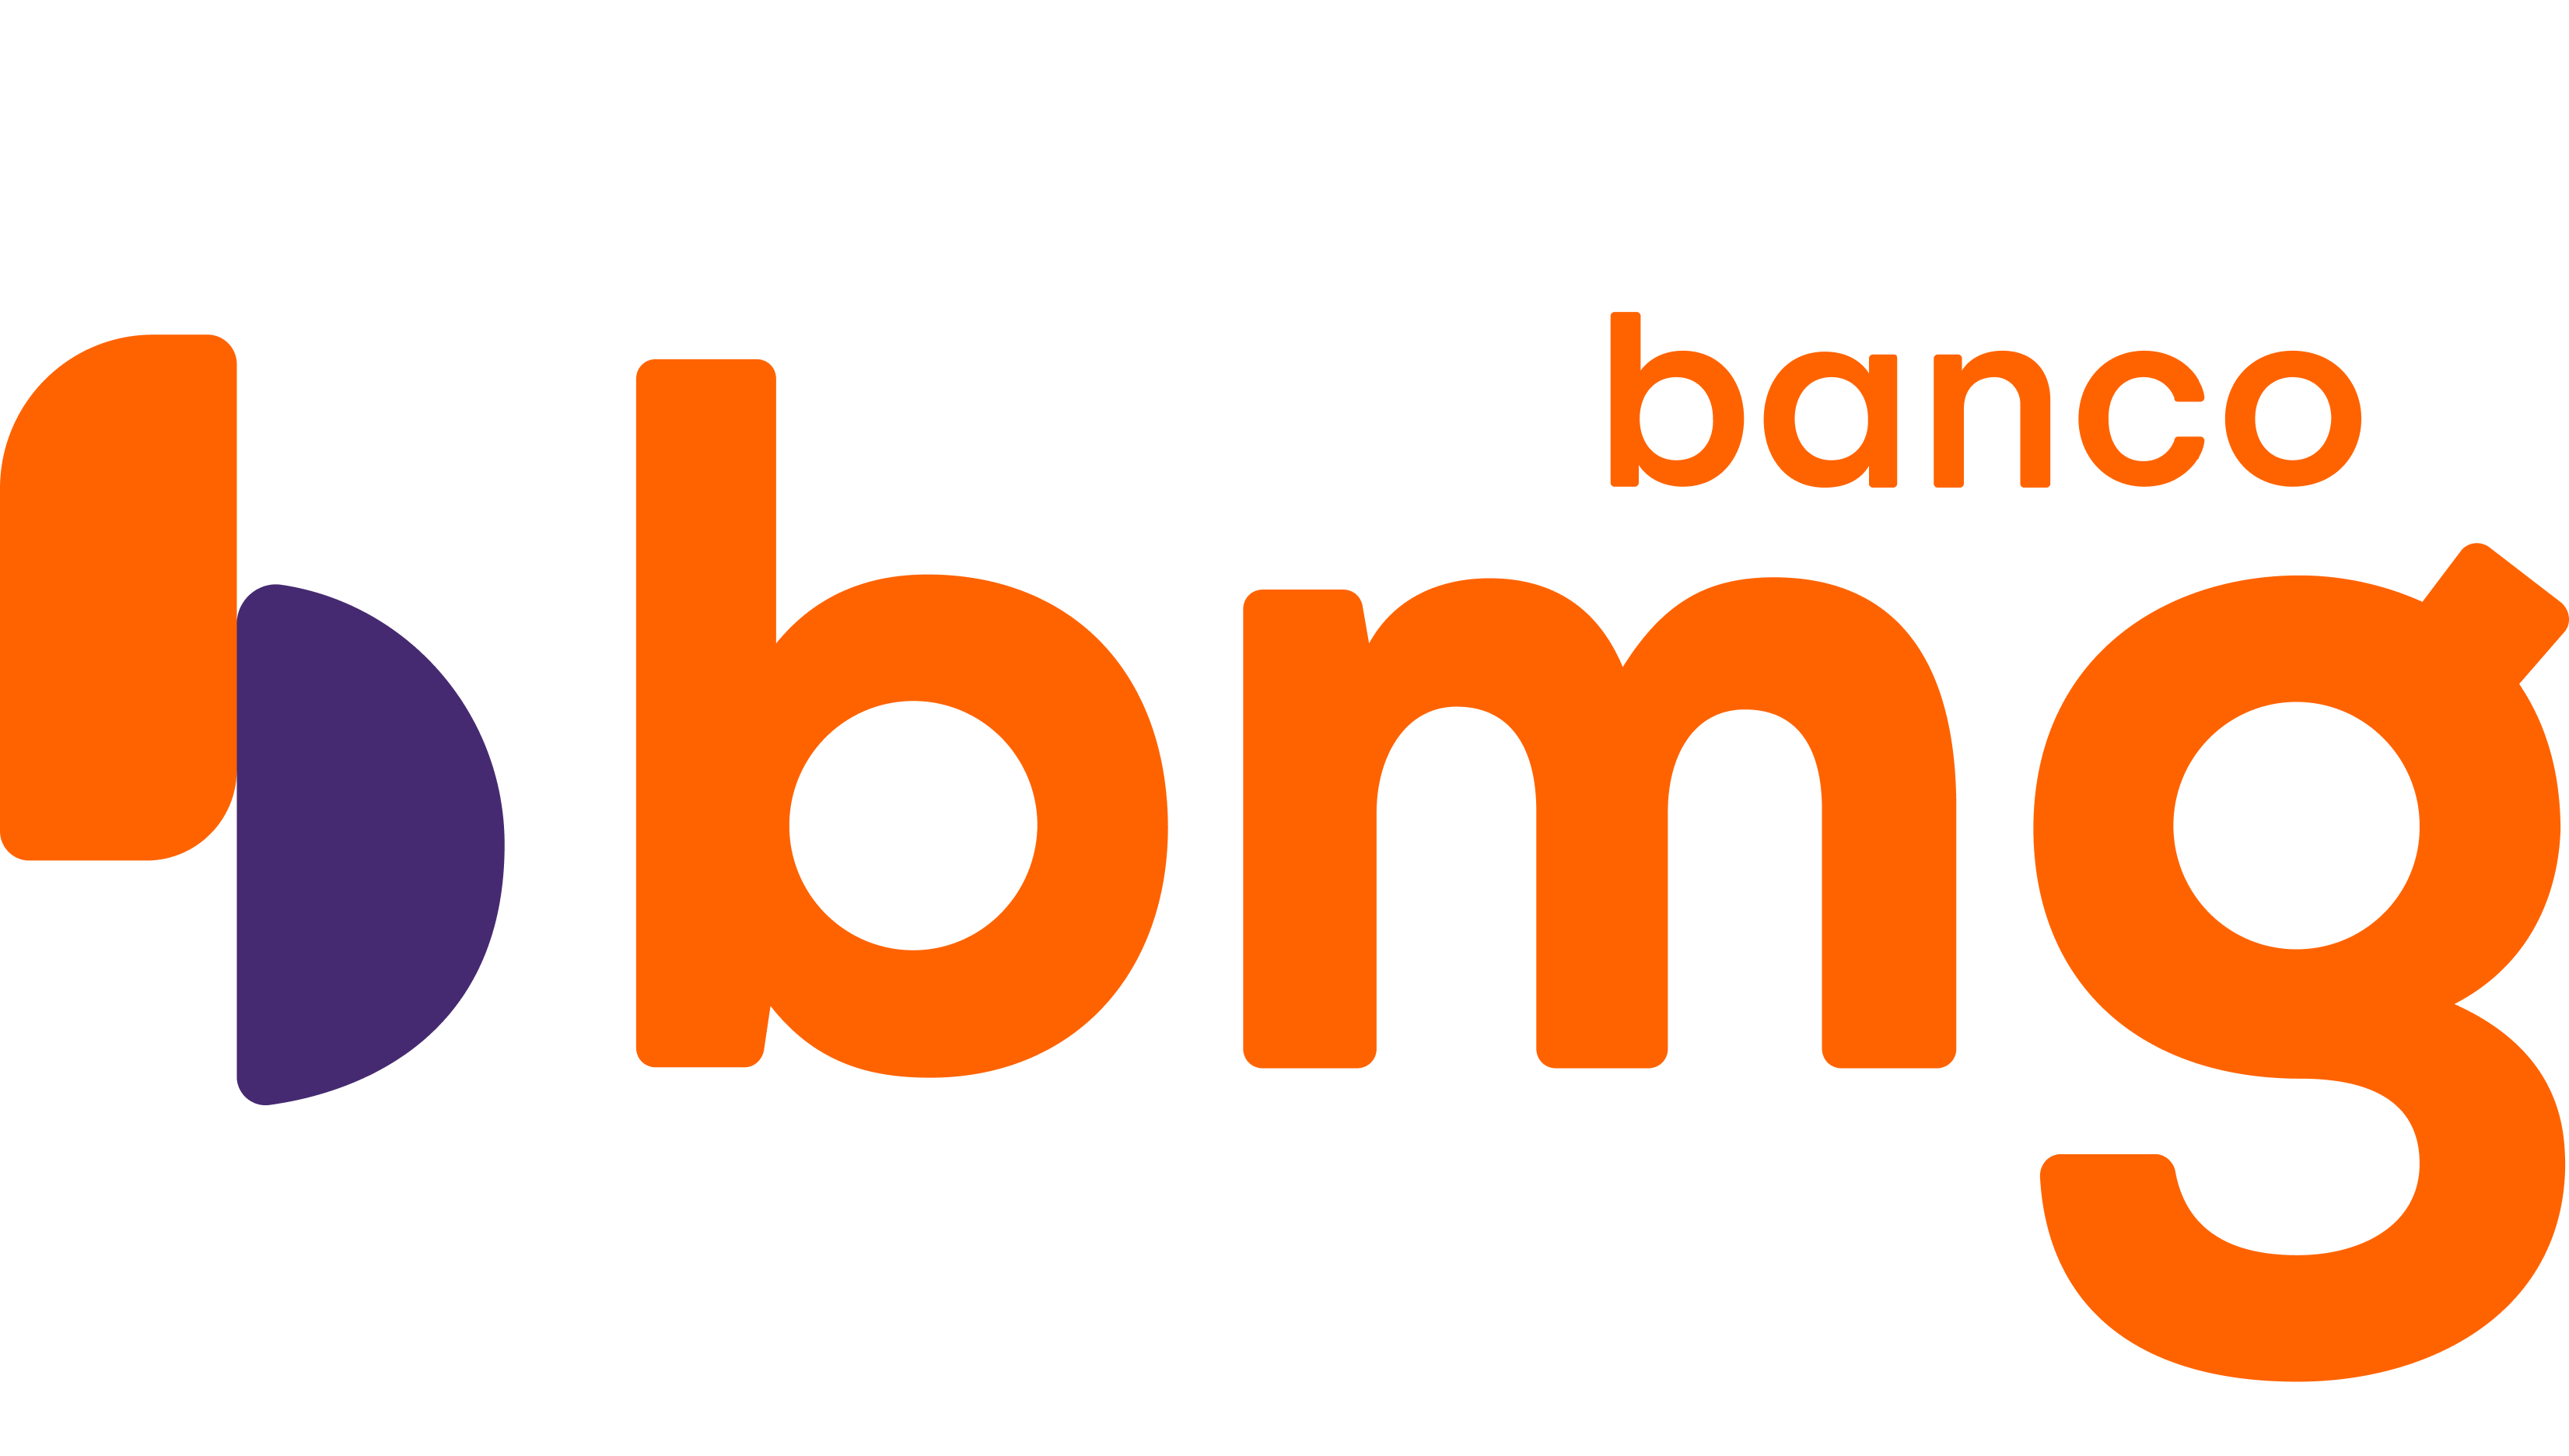 O Banco BMG oferece vários cartões para torcedores, como o BMG Vozão. Fonte: BMG.